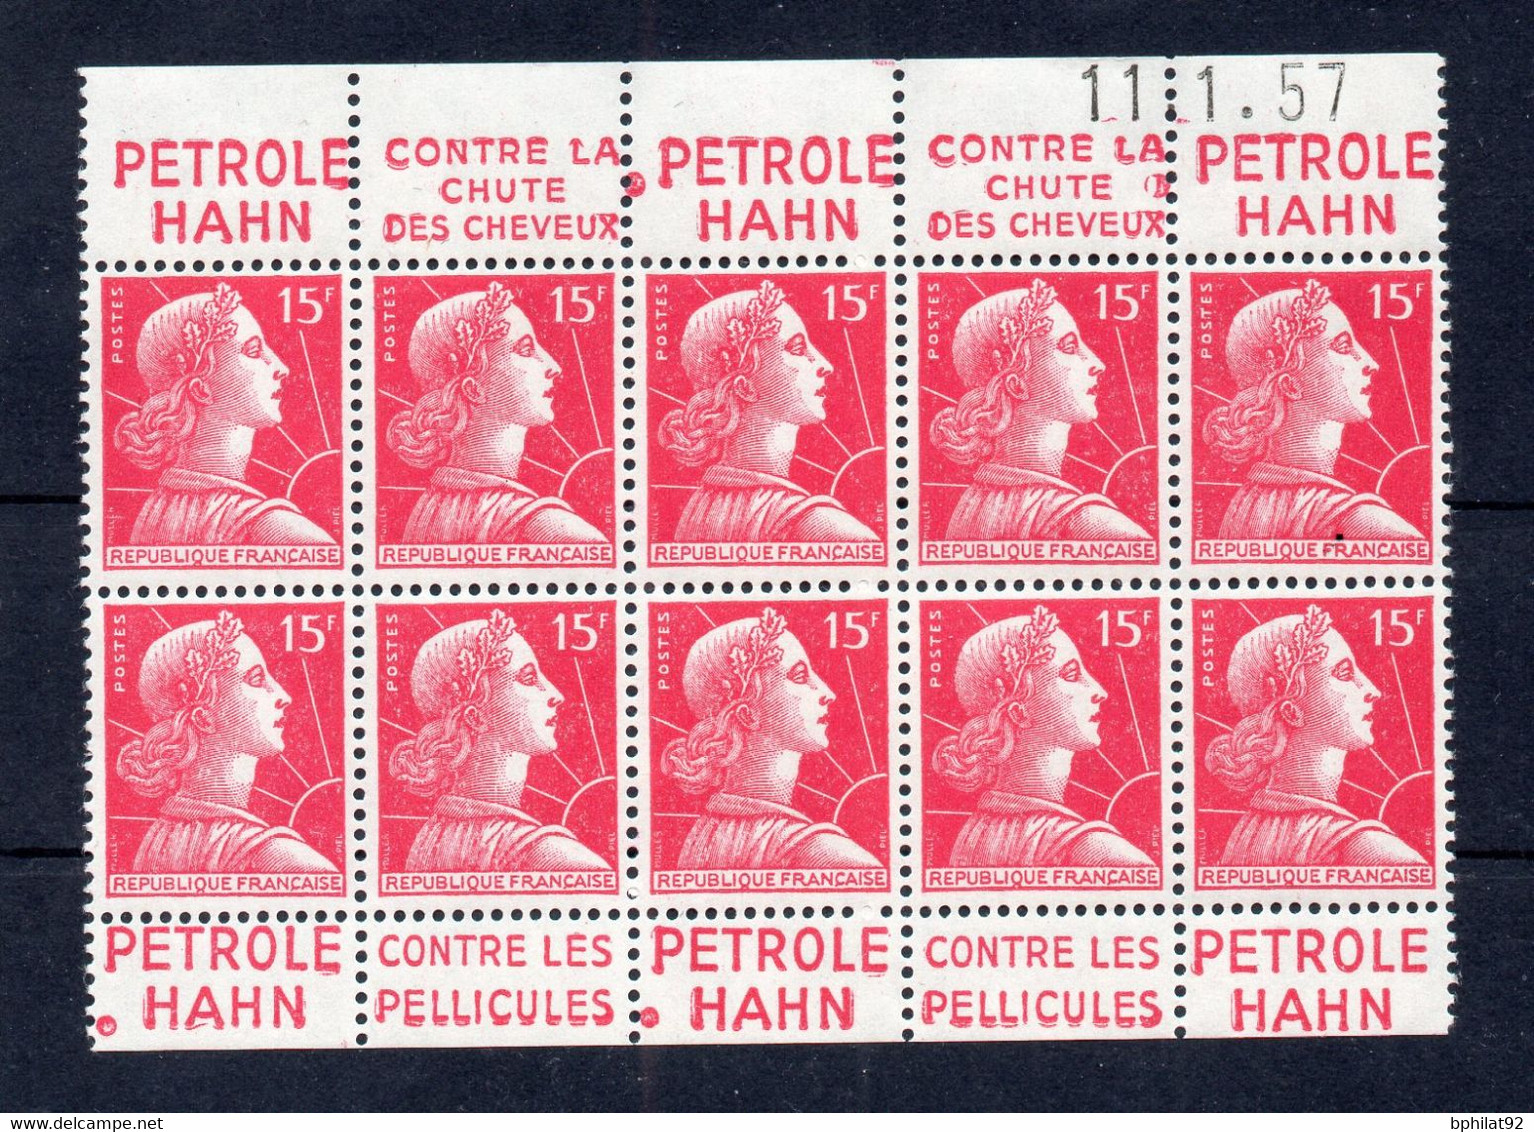 !!! 15F MARIANNE DE MULLER, 1/2 INTERIEUR DE CARNET AVEC BANDES PUBS PETROLE HAHN NEUF ** - Unused Stamps